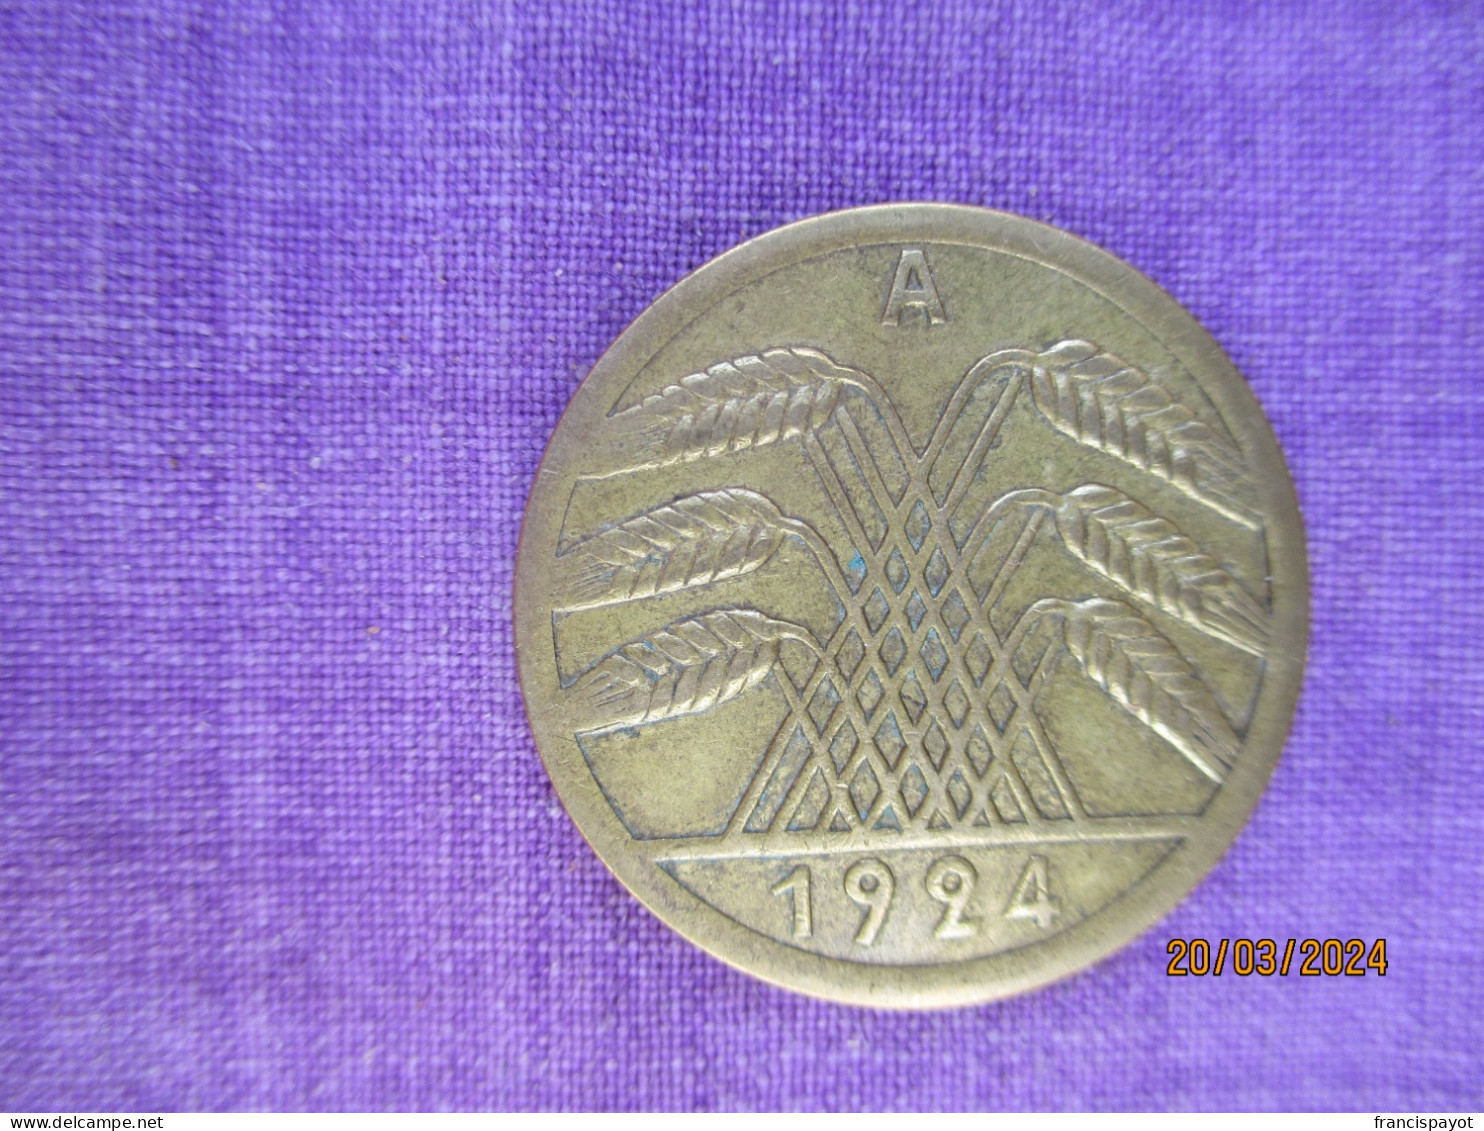 Germany: 50 Pfennig 1924 A - 50 Rentenpfennig & 50 Reichspfennig